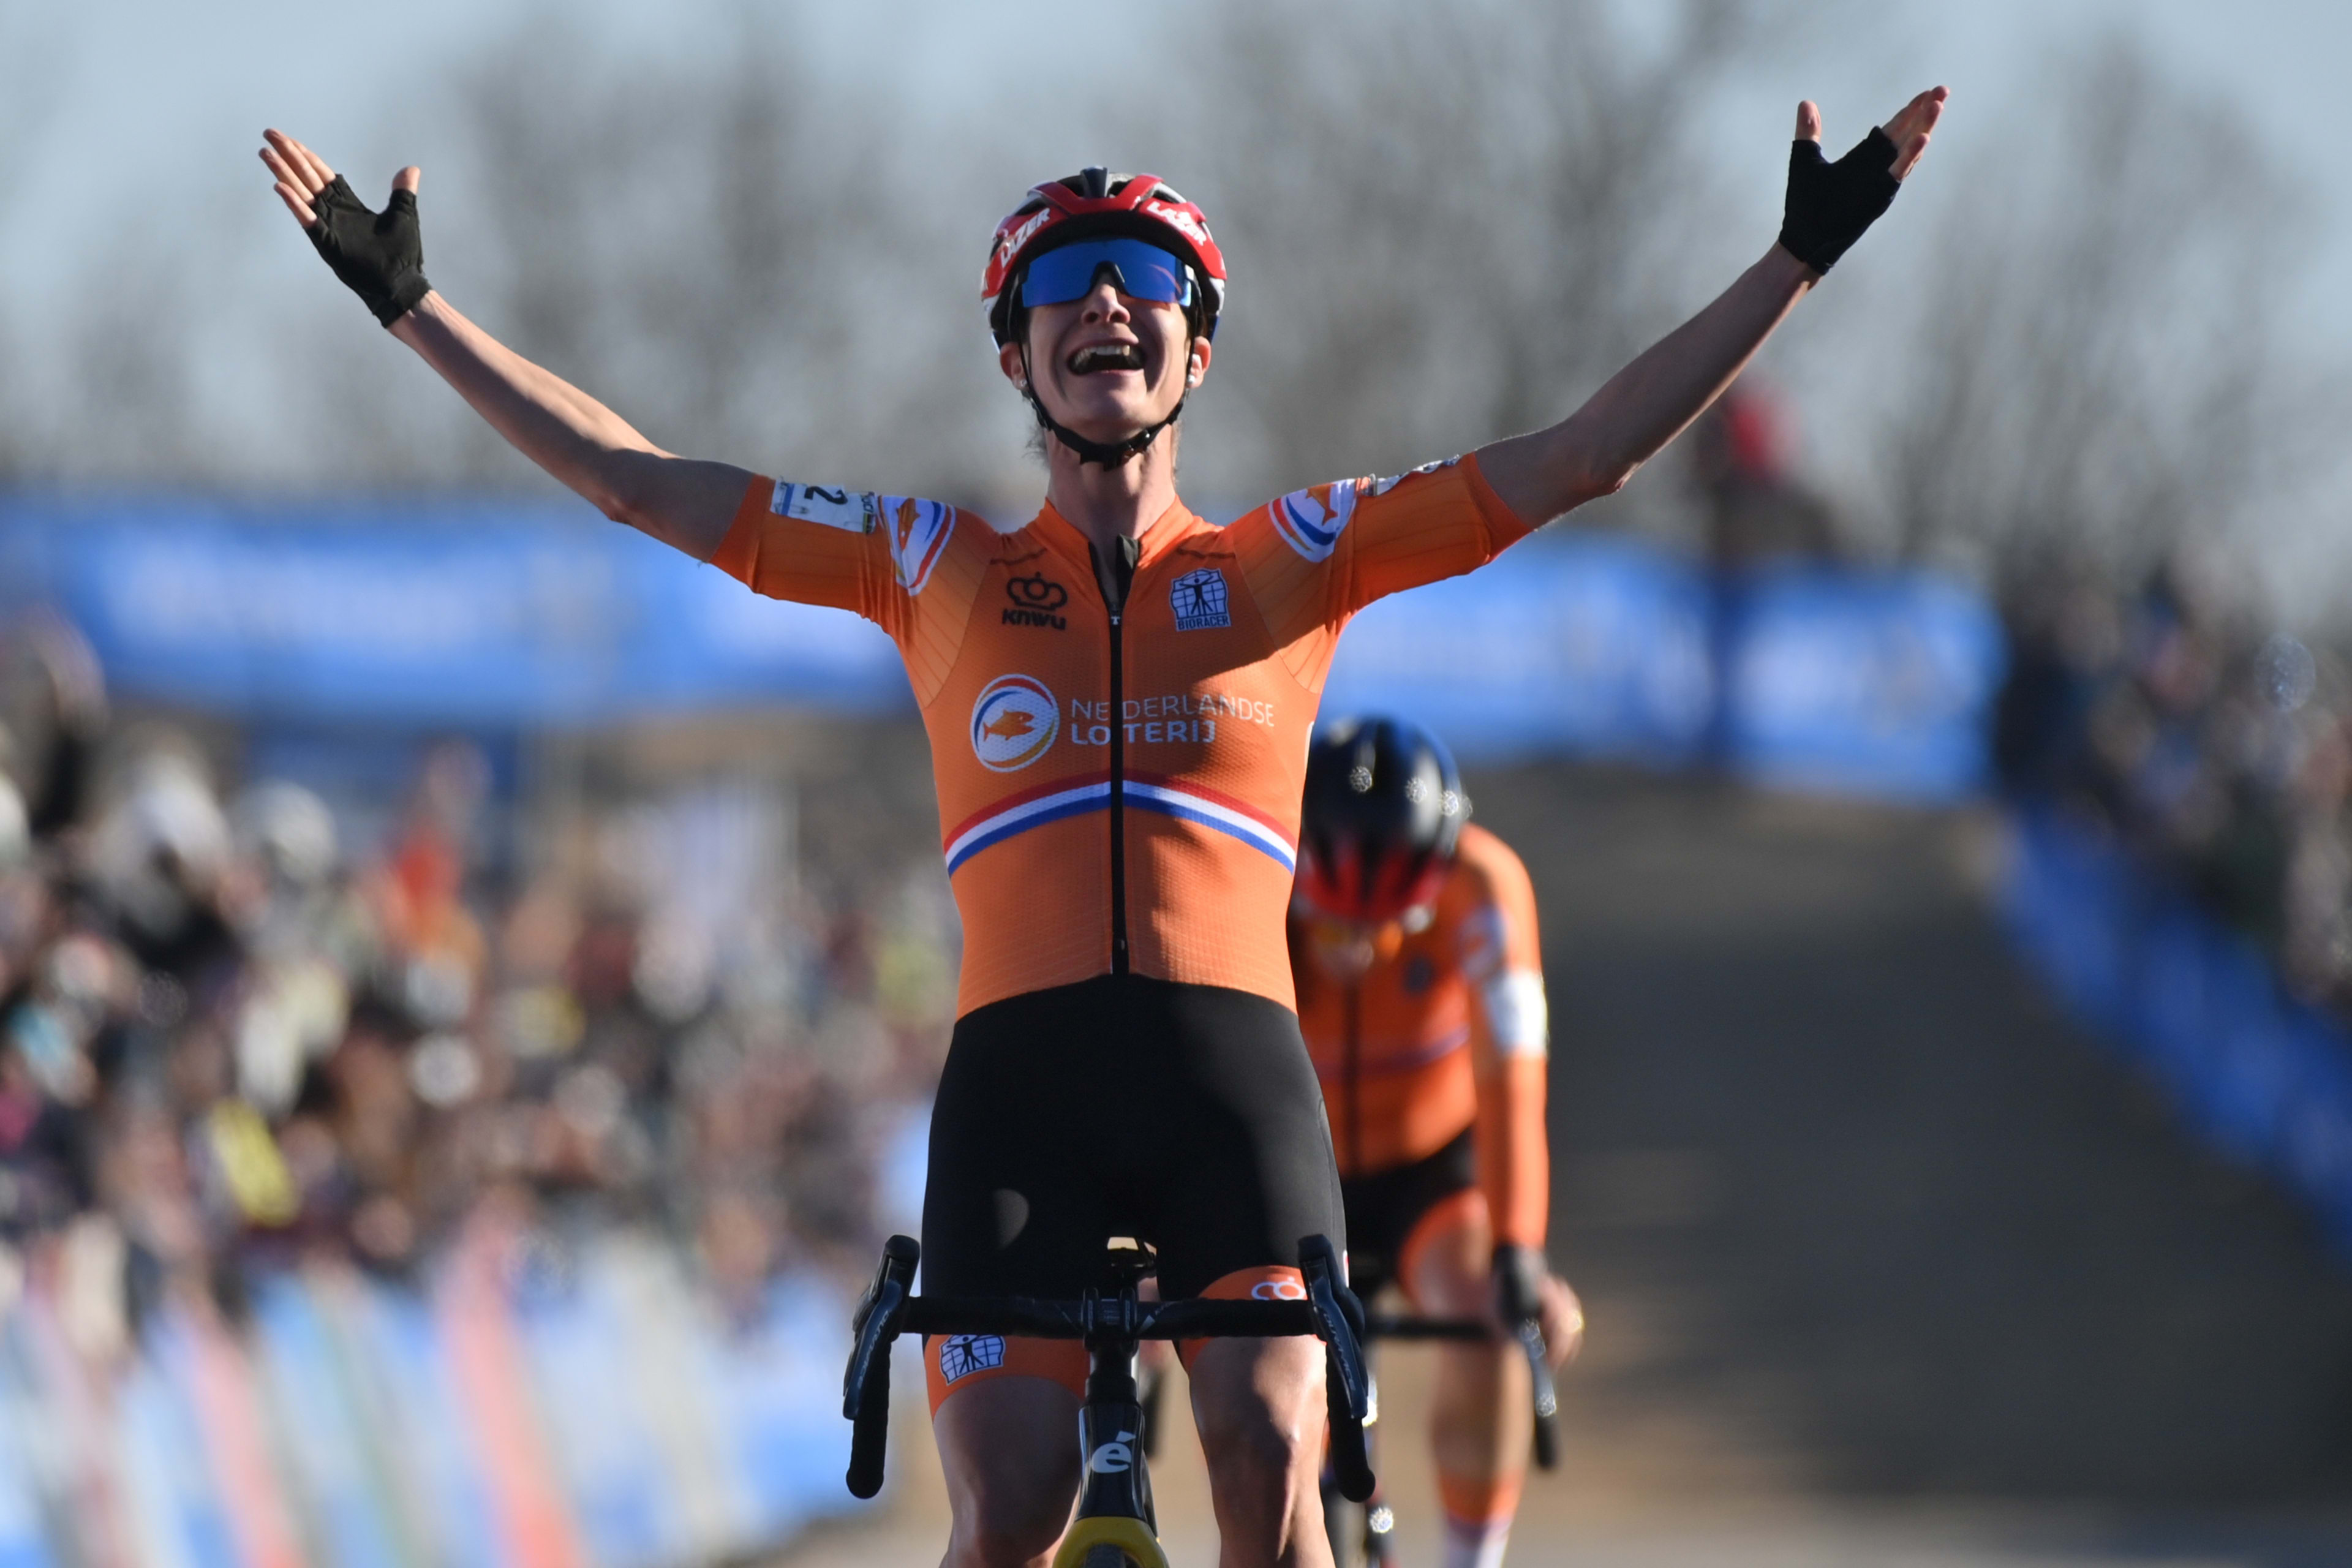 Topfavoriet Marianne Vos test positief op corona en mist Parijs-Roubaix: 'De teleurstelling is enorm'